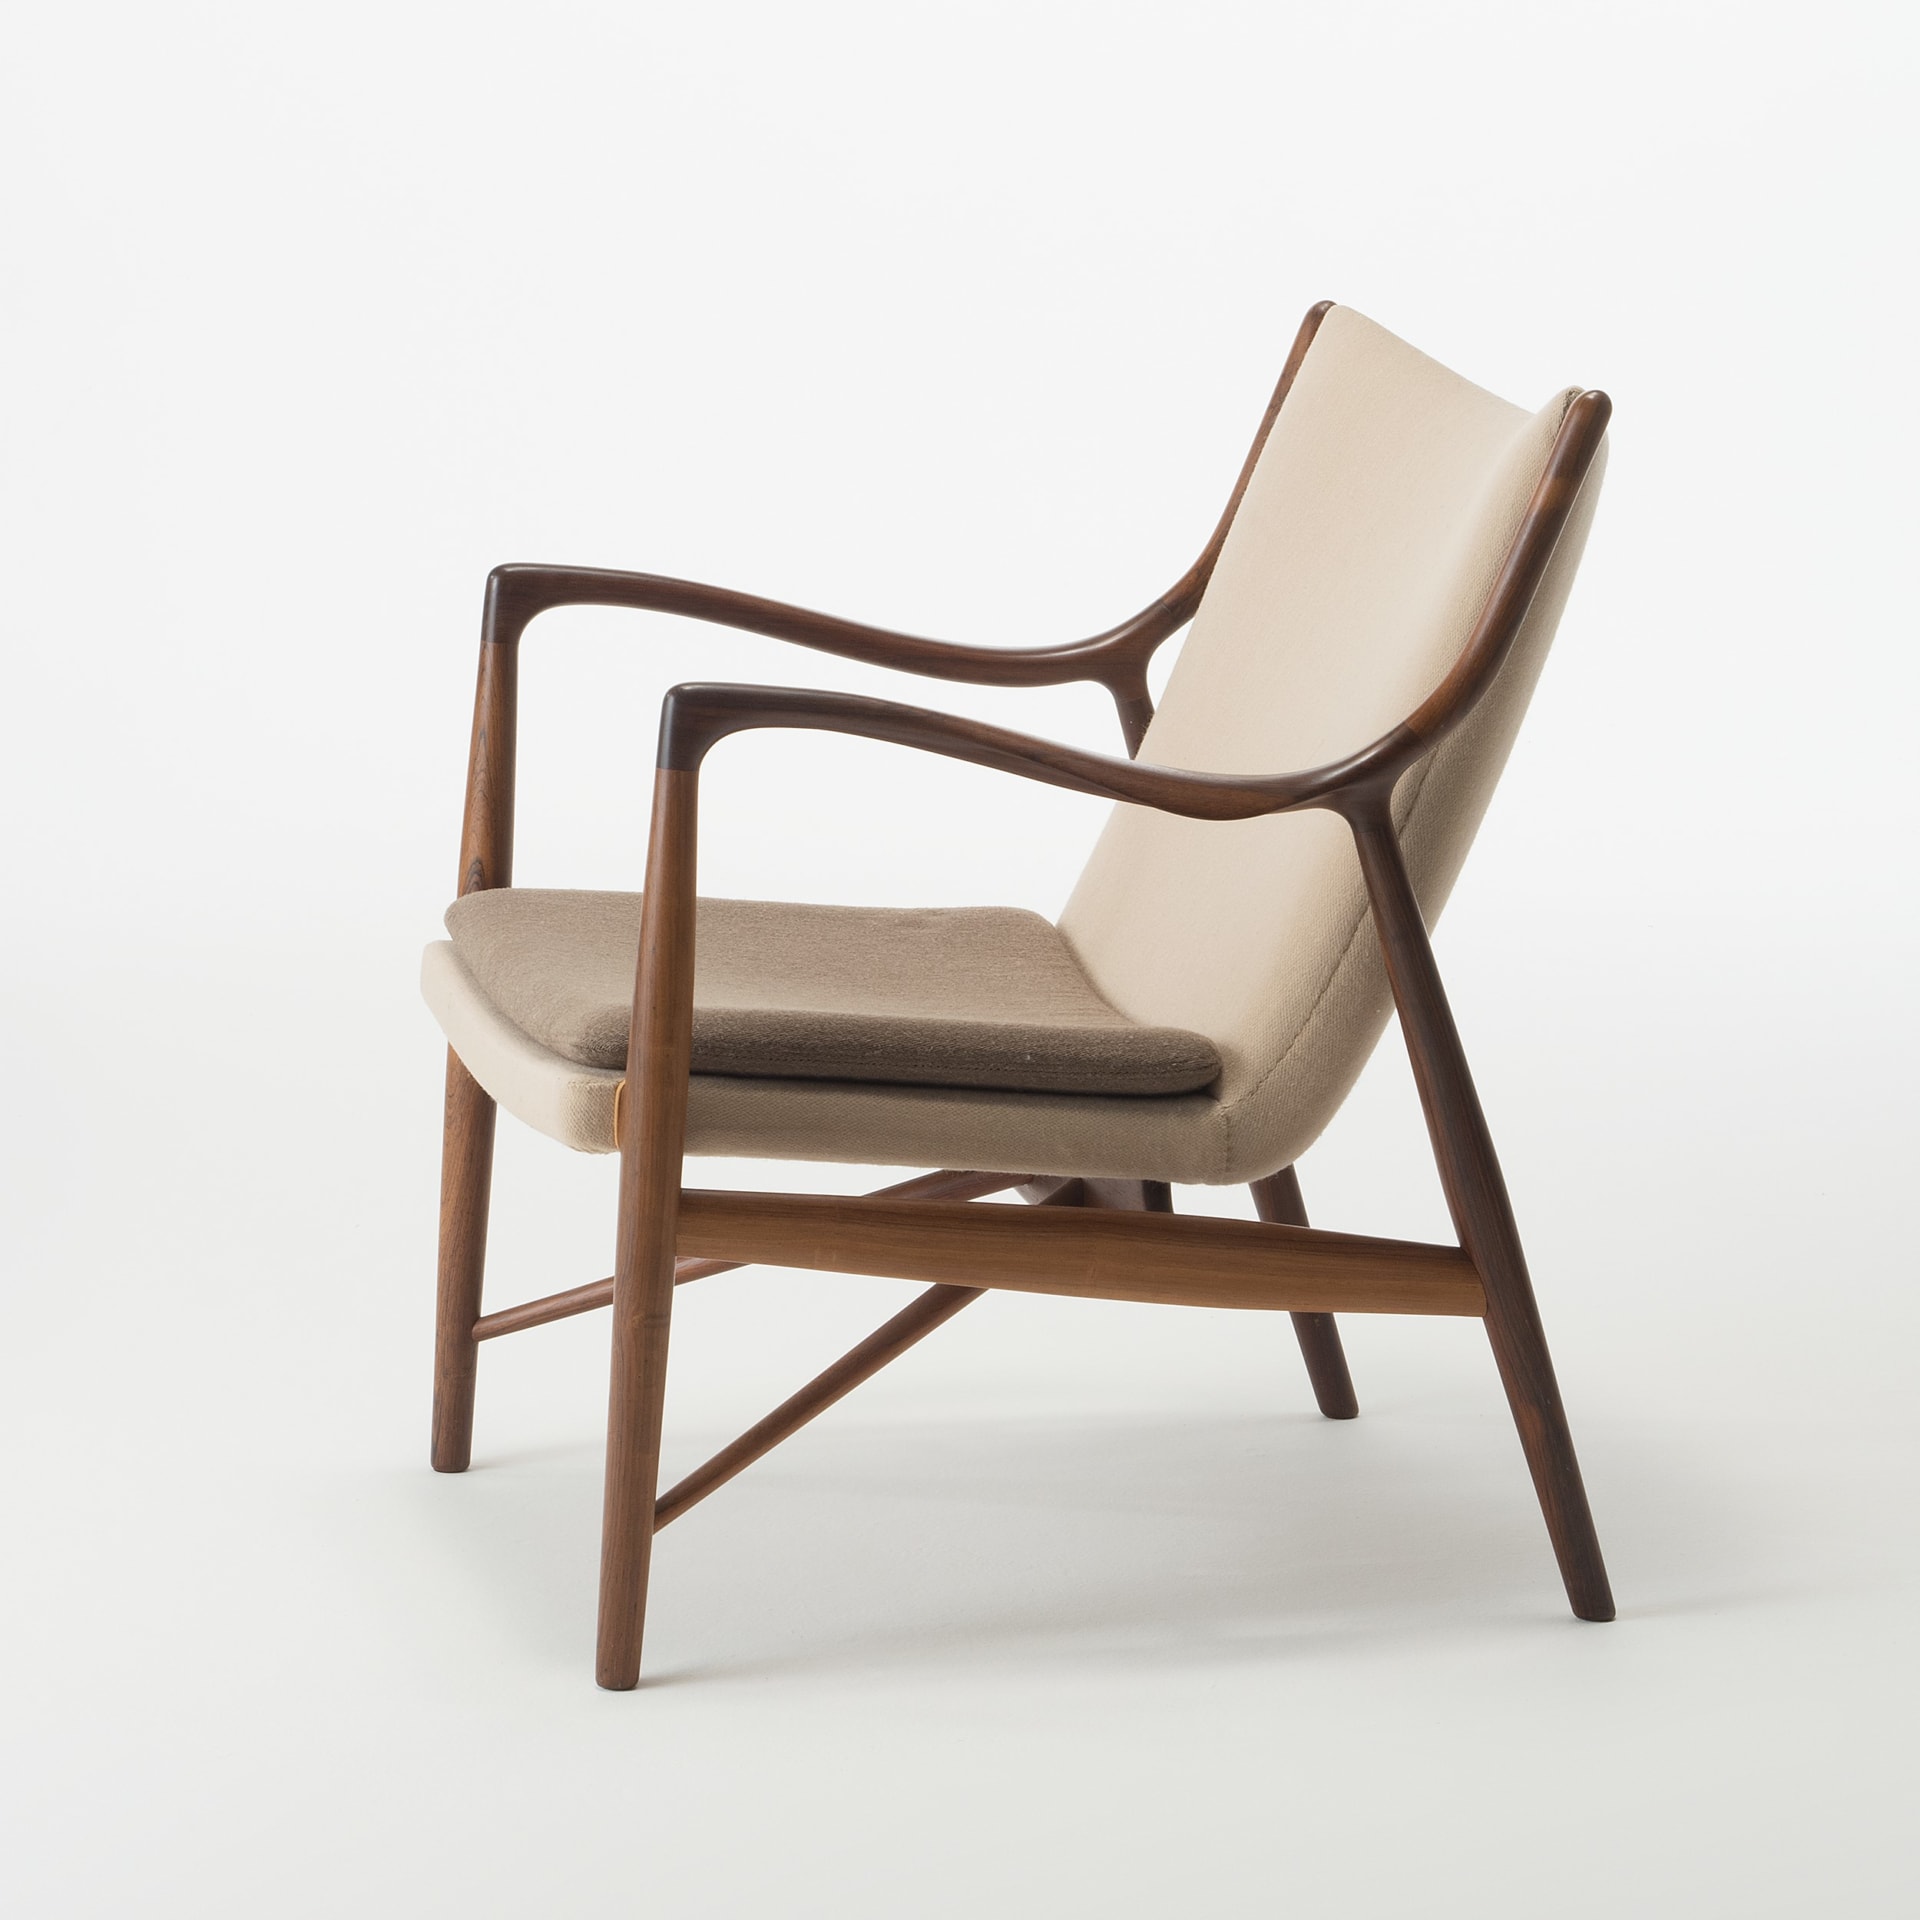 東京都美術館 2022年夏の企画展 「フィン・ユールとデンマークの椅子 